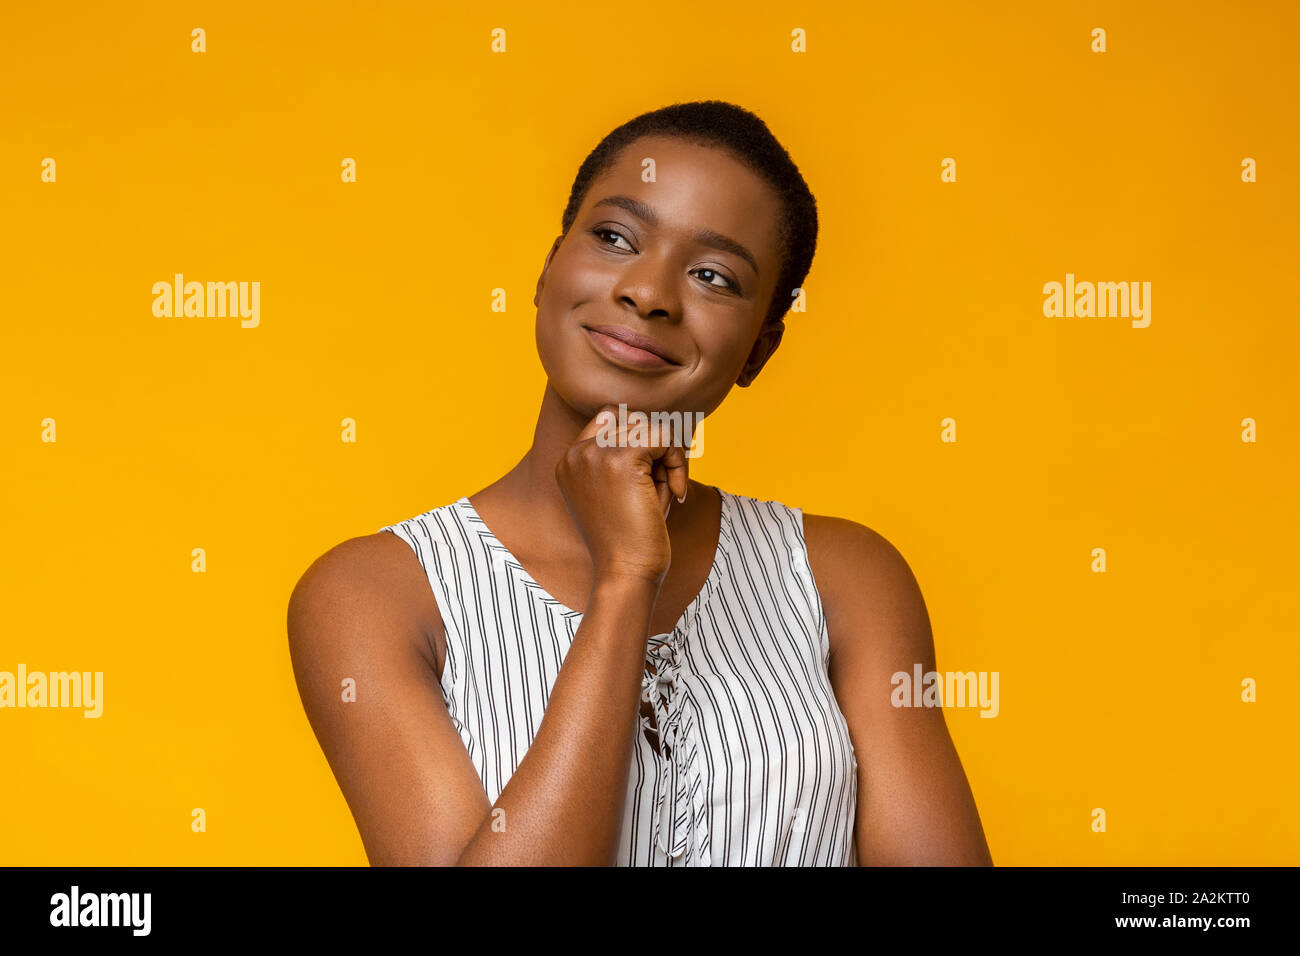 Tranquillo African American Girl giorno sognando su sfondo giallo Foto Stock